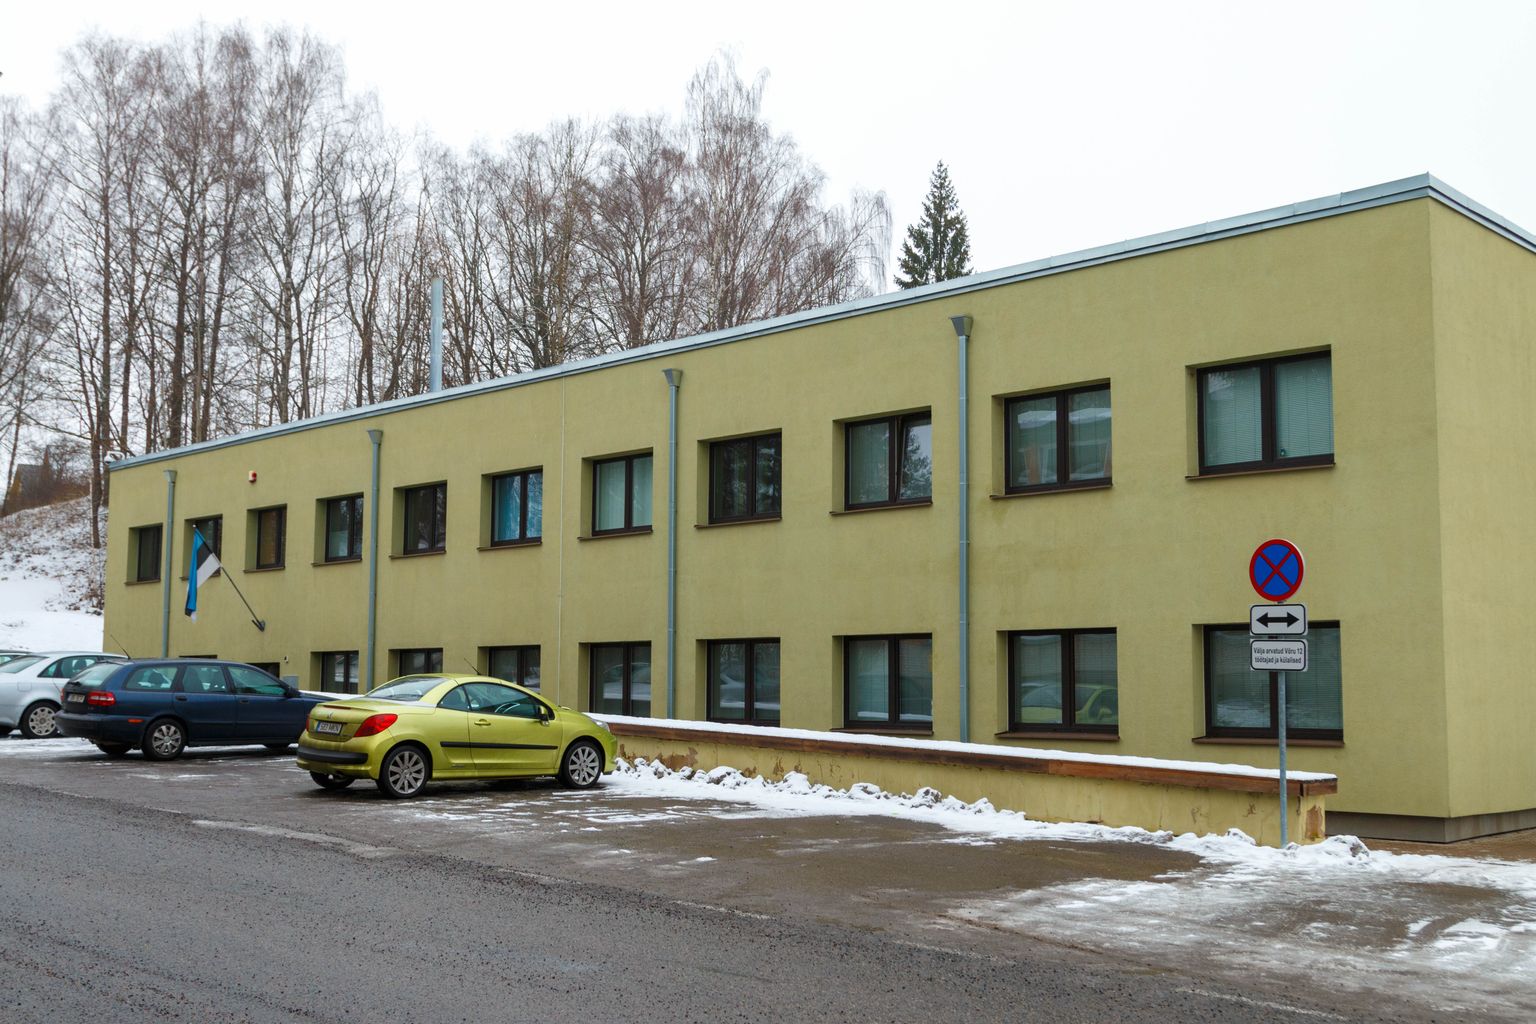 Kohtuotsus tehti eelmisel nädalal Tartu maakohtu Võru kohtumajas asukohaga Põlvas.